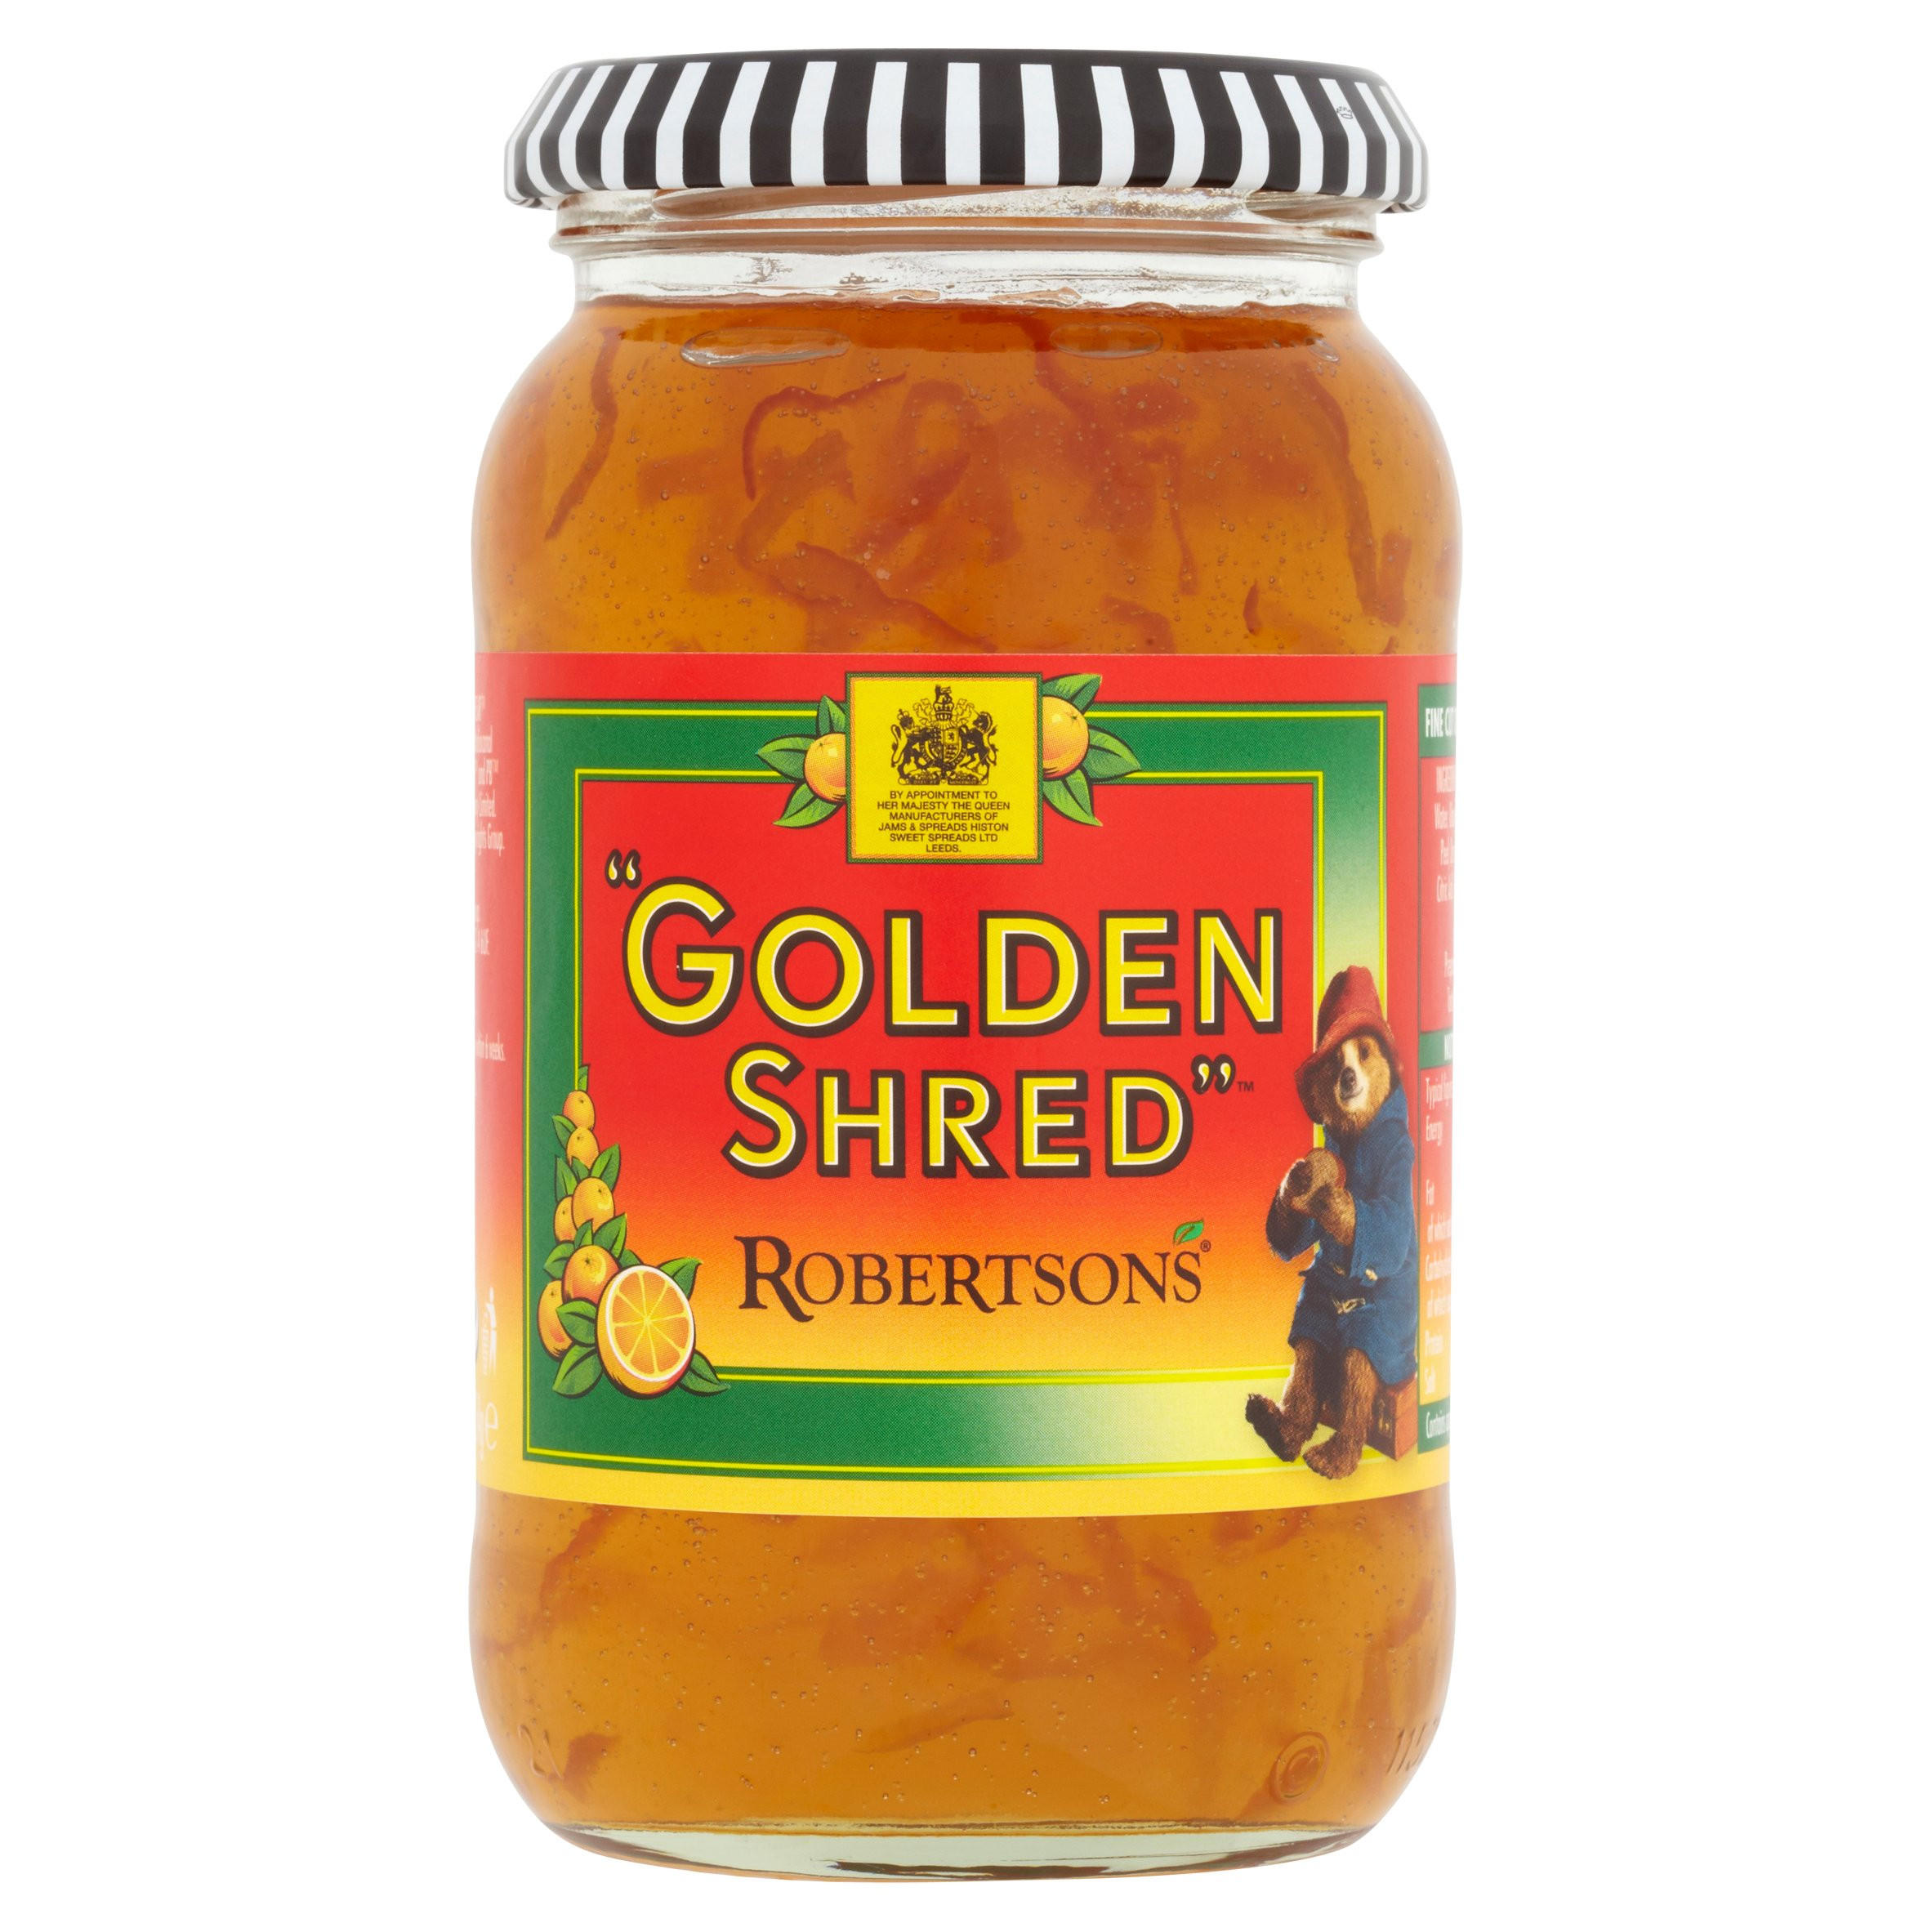 robertsons golden shred marmalade 454g jams, marmalades